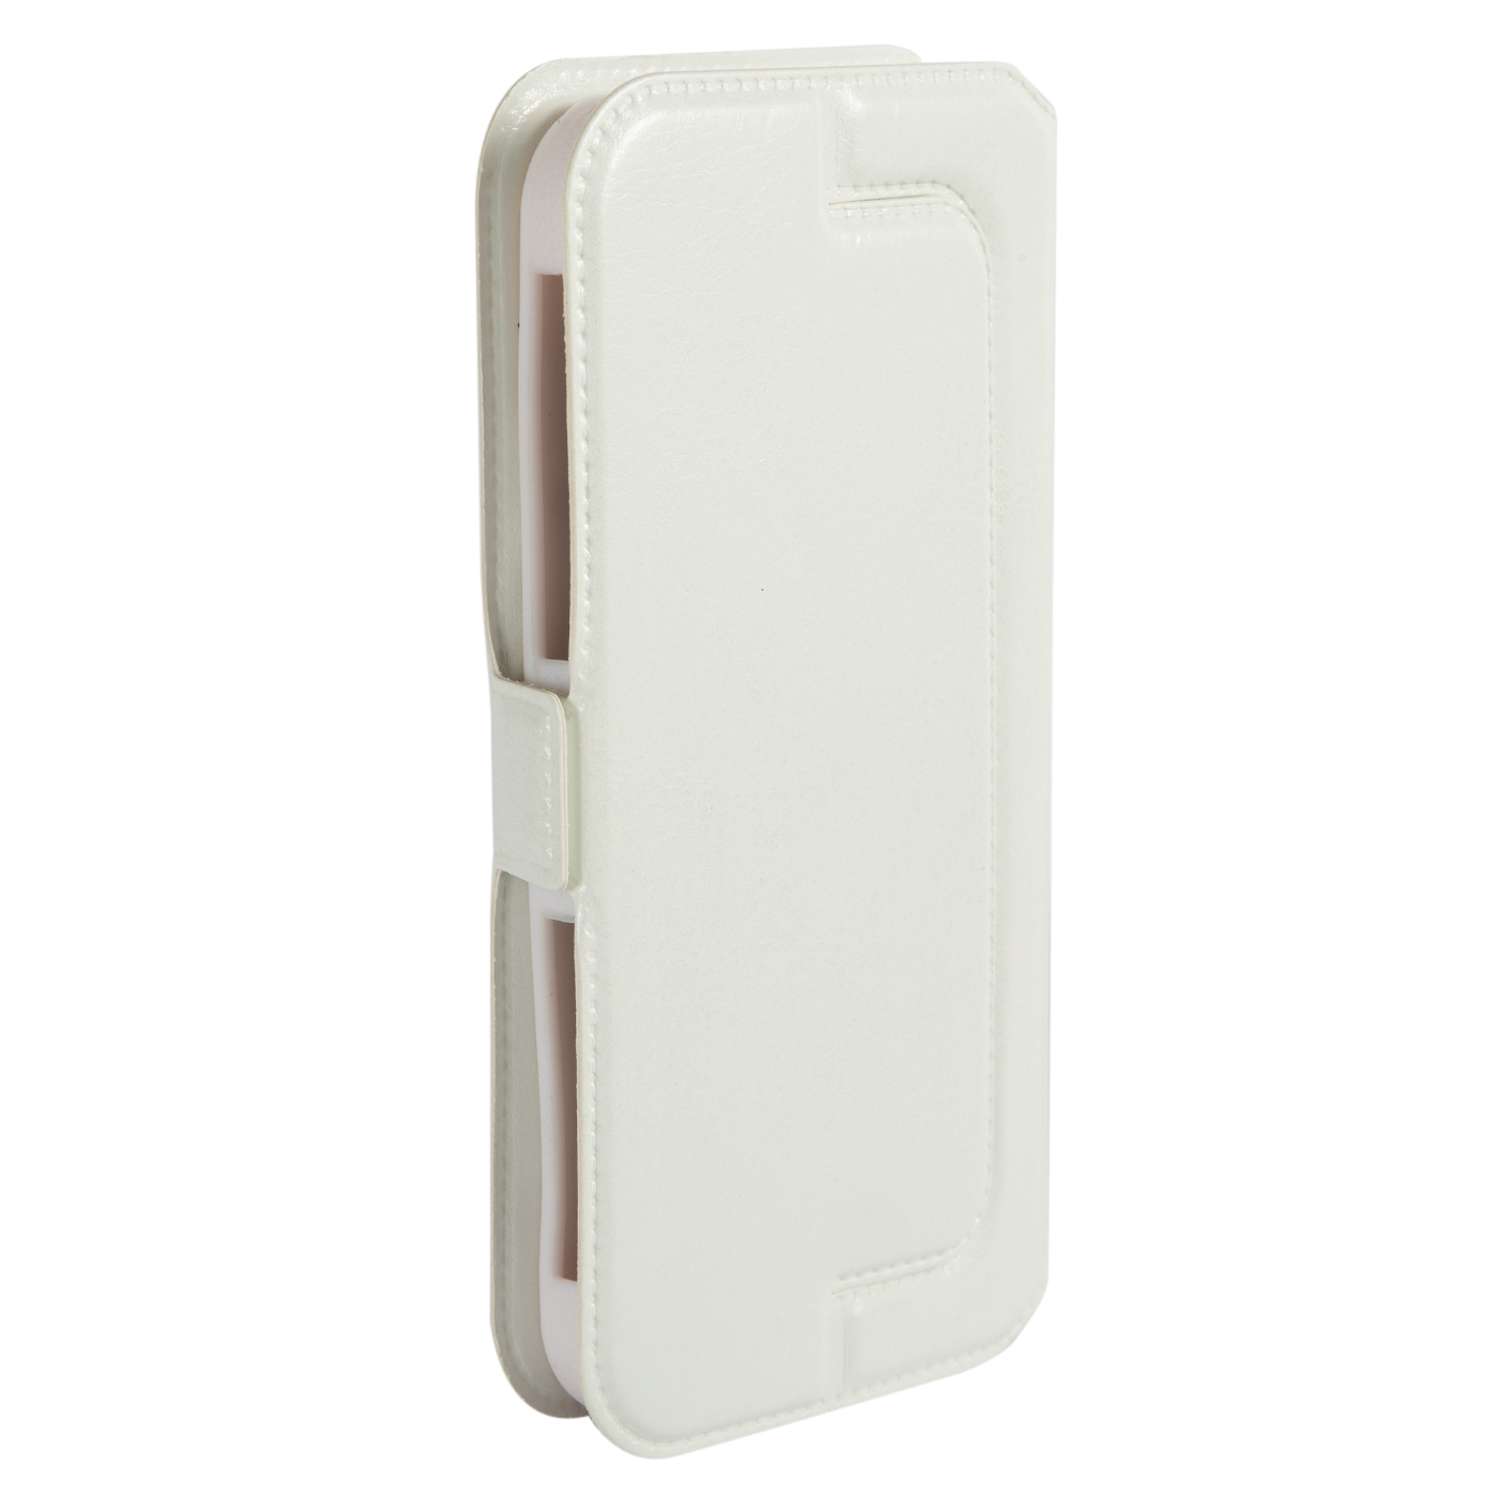 Чехол универсальный iBox Universal Slide для телефонов 3.5-4.2 дюйма белый - фото 4